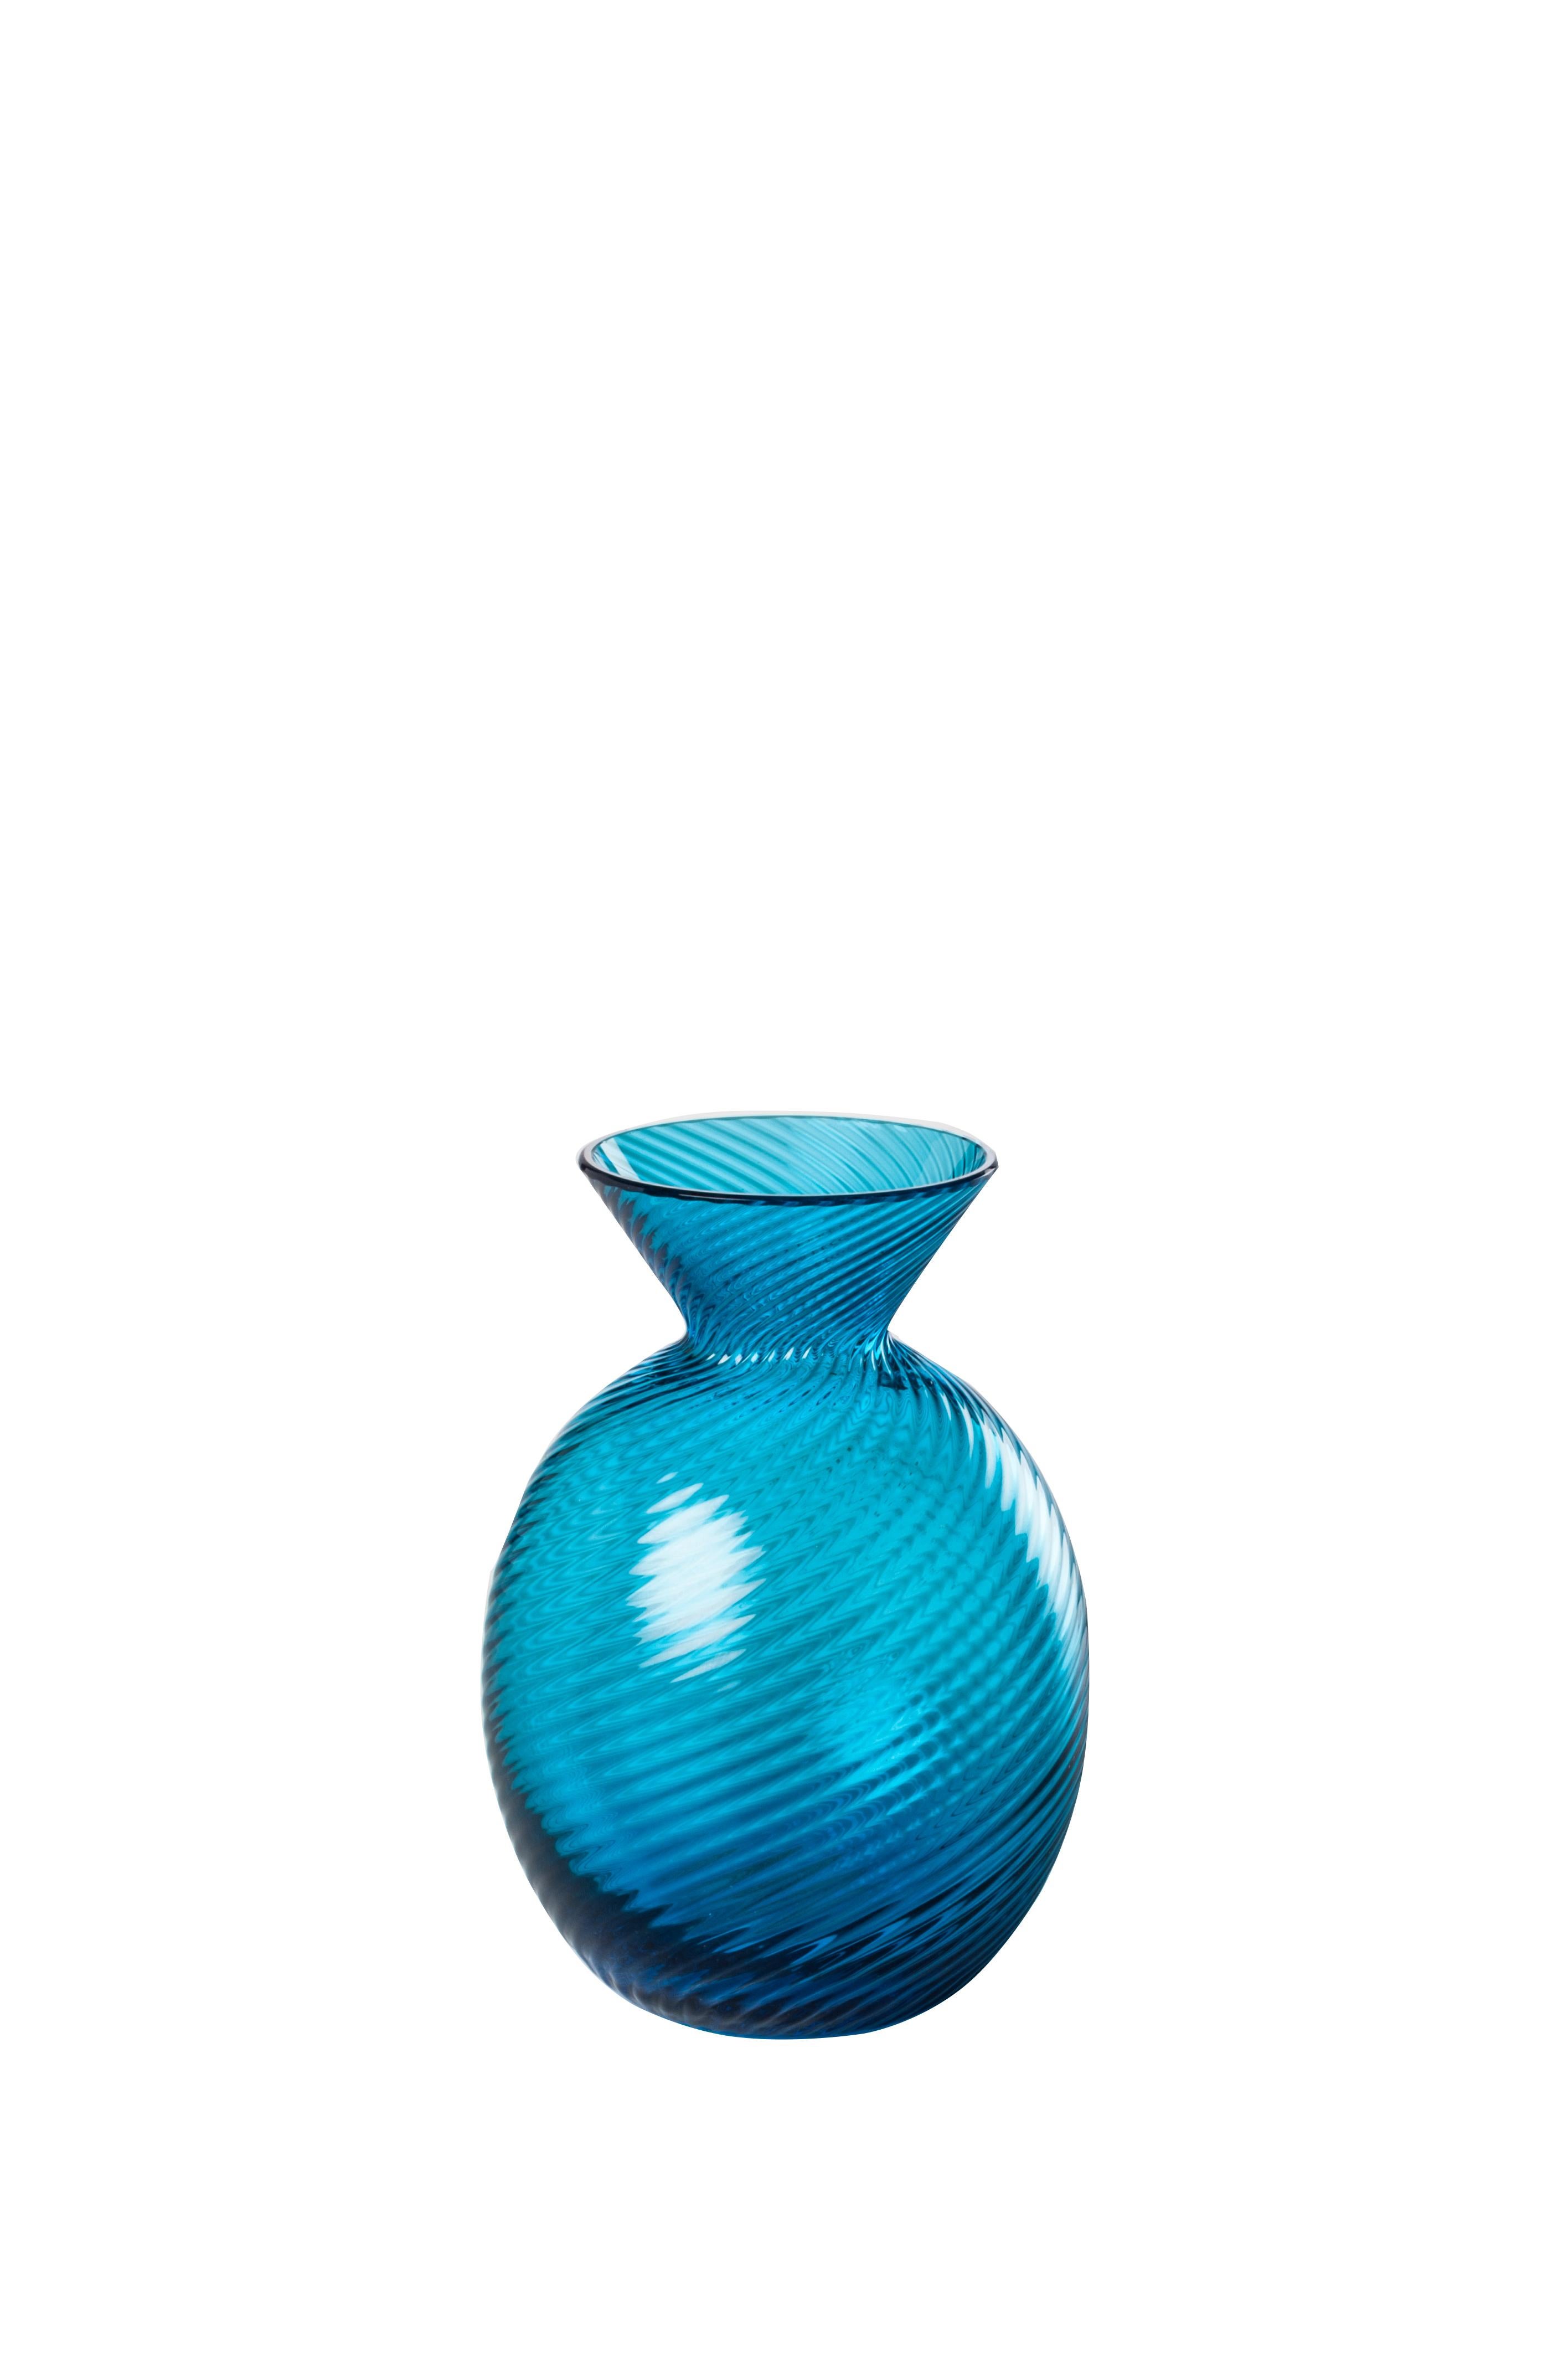 Vase en verre Venini avec corps et col façonnés en saphir conçu en 2017. Parfait pour la décoration d'intérieur, en tant que récipient ou élément de décoration pour n'importe quelle pièce. Egalement disponible dans d'autres couleurs sur